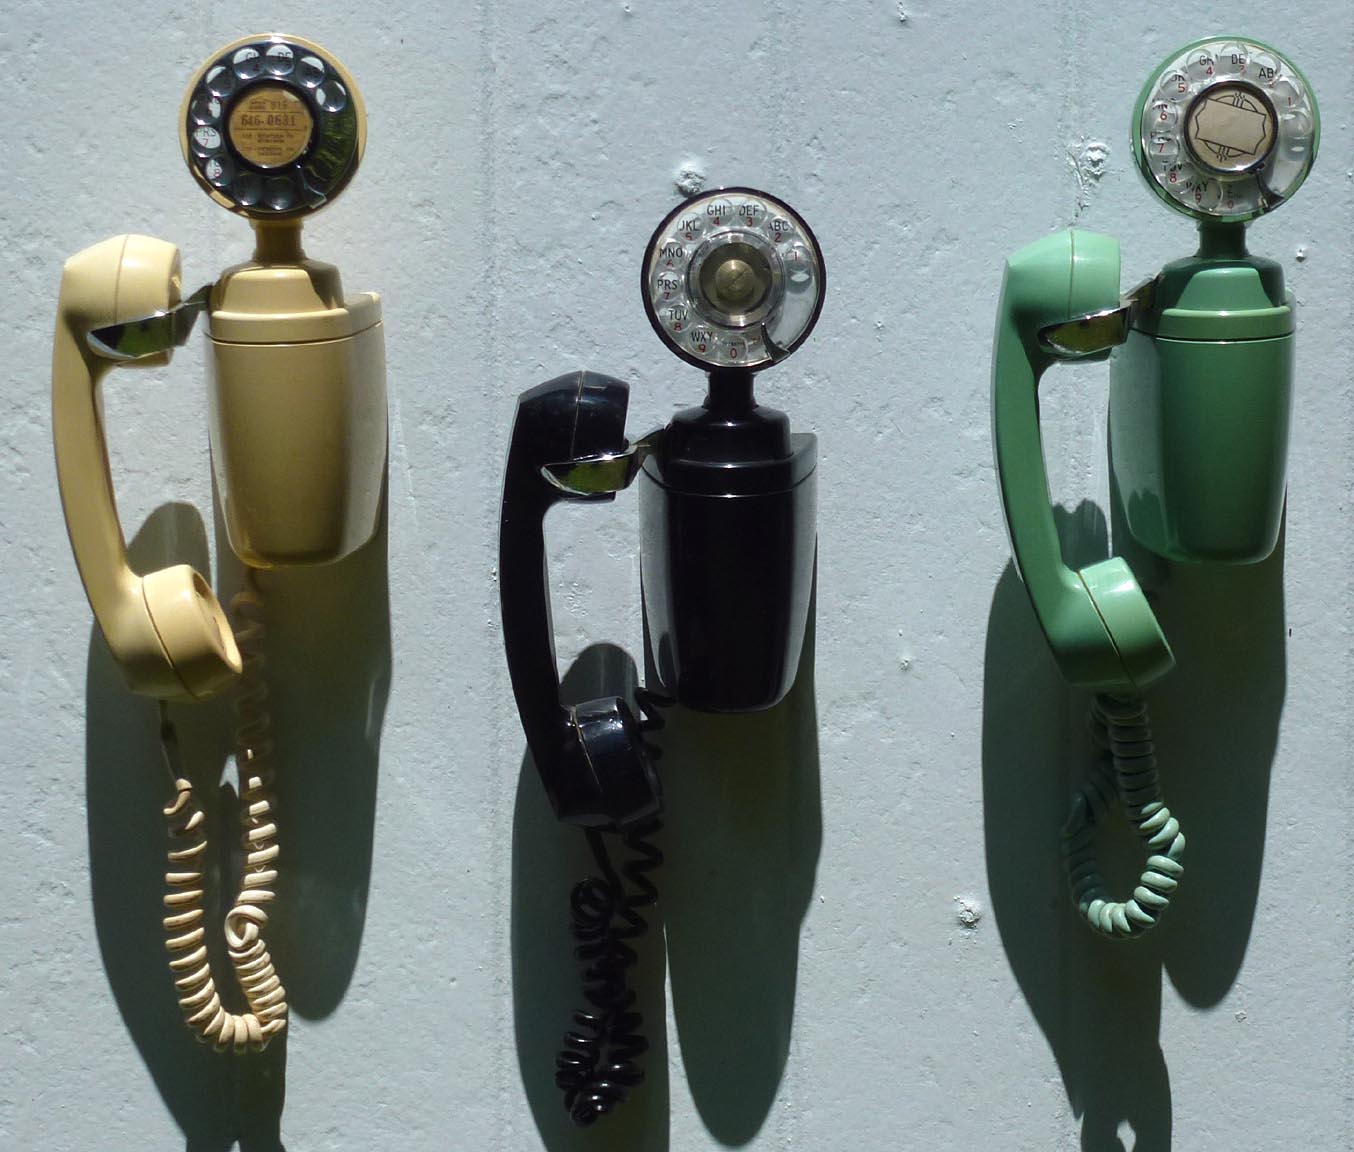 Three decorative telephones